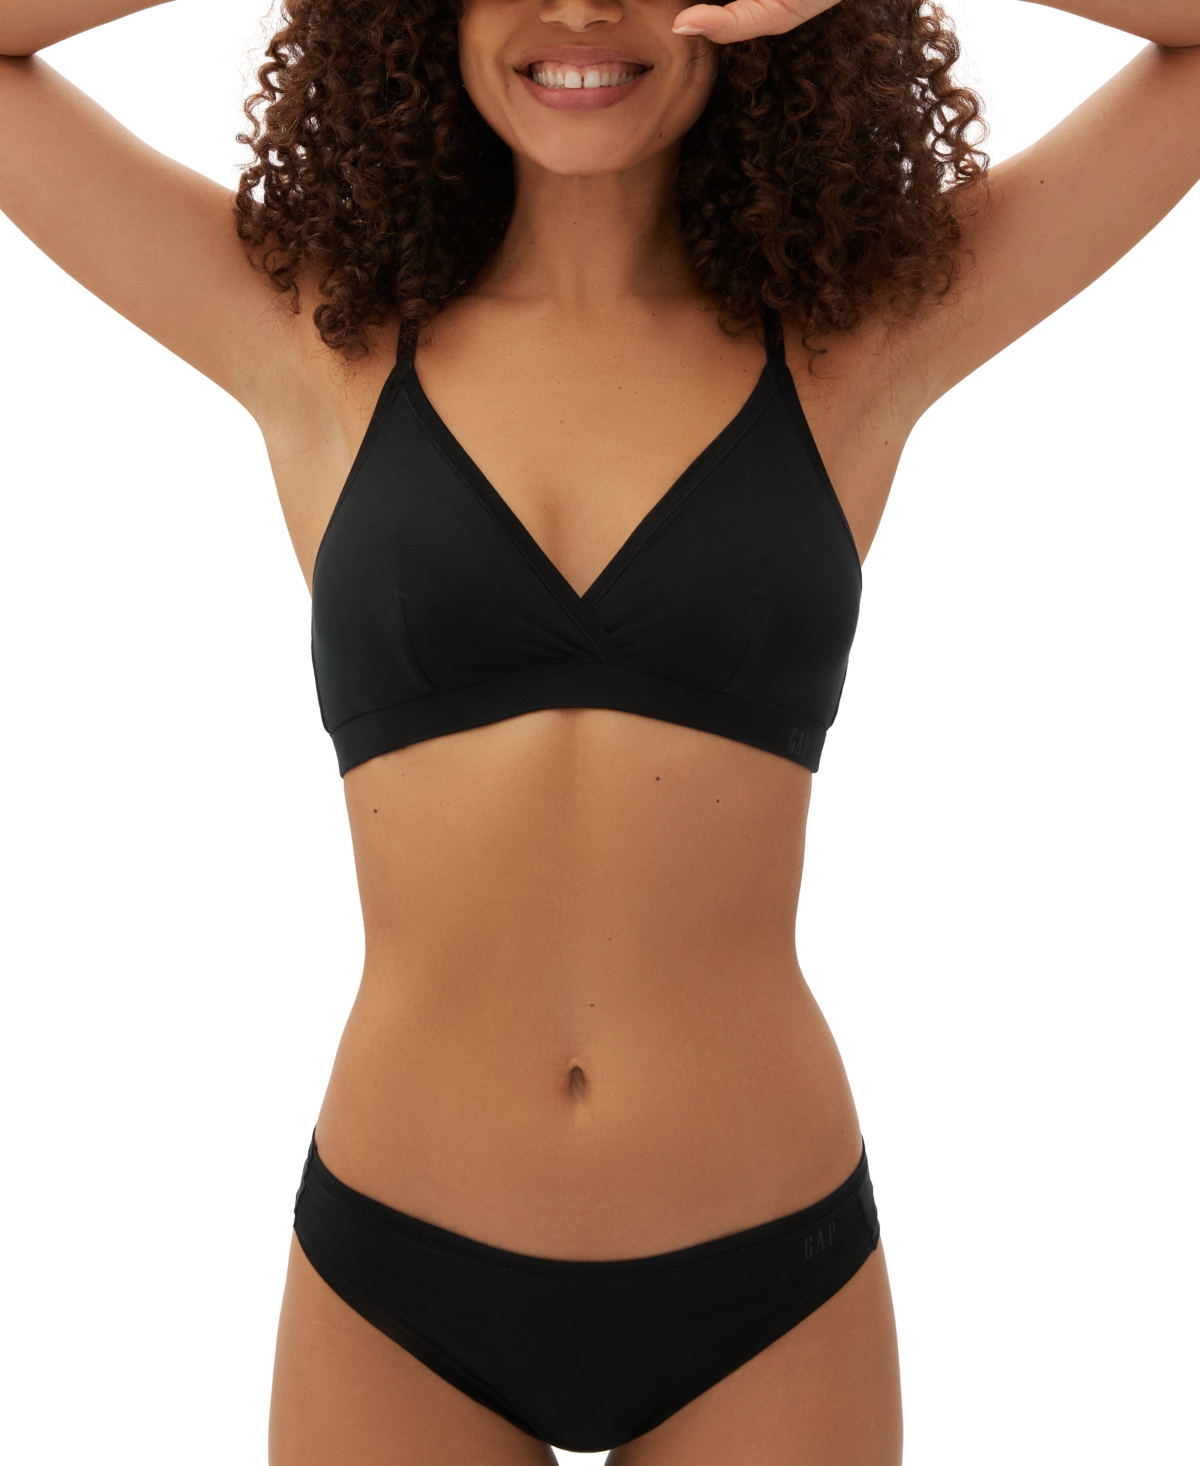 Gap Body Women's Everyday Essentials Laser Bonded Thong Underwear